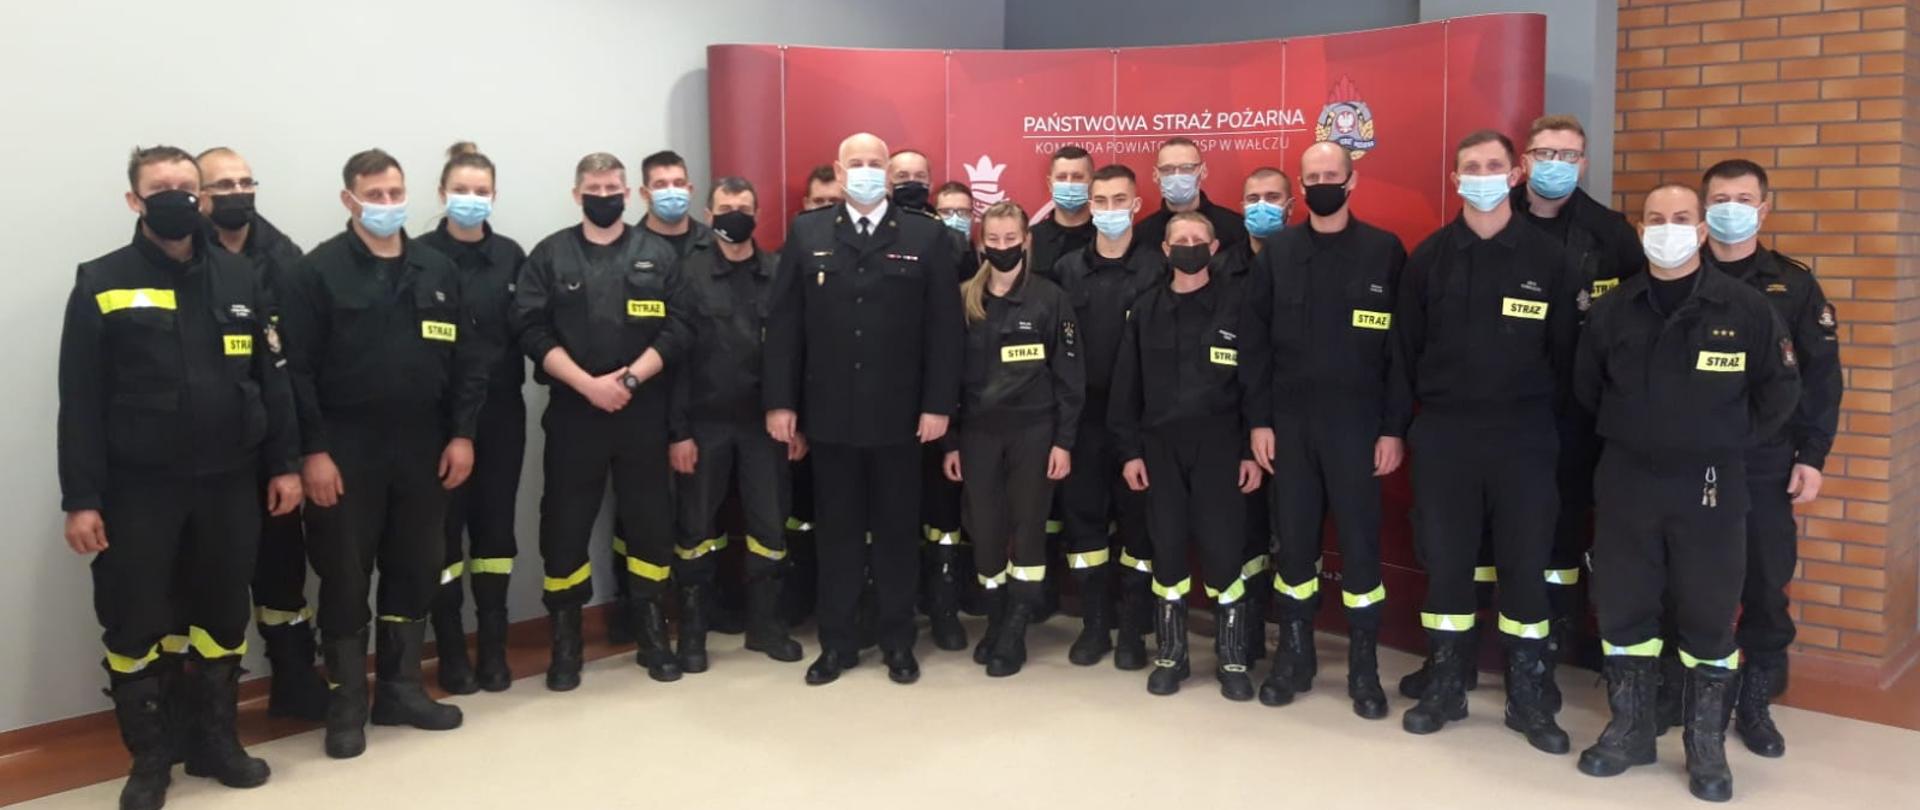 Zdjęcie przedstawia Komendanta Powiatowego, egzaminatorów i uczestników szkolenia dowódców OSP na sali konferencyjnej KP PSP w Wałczu 